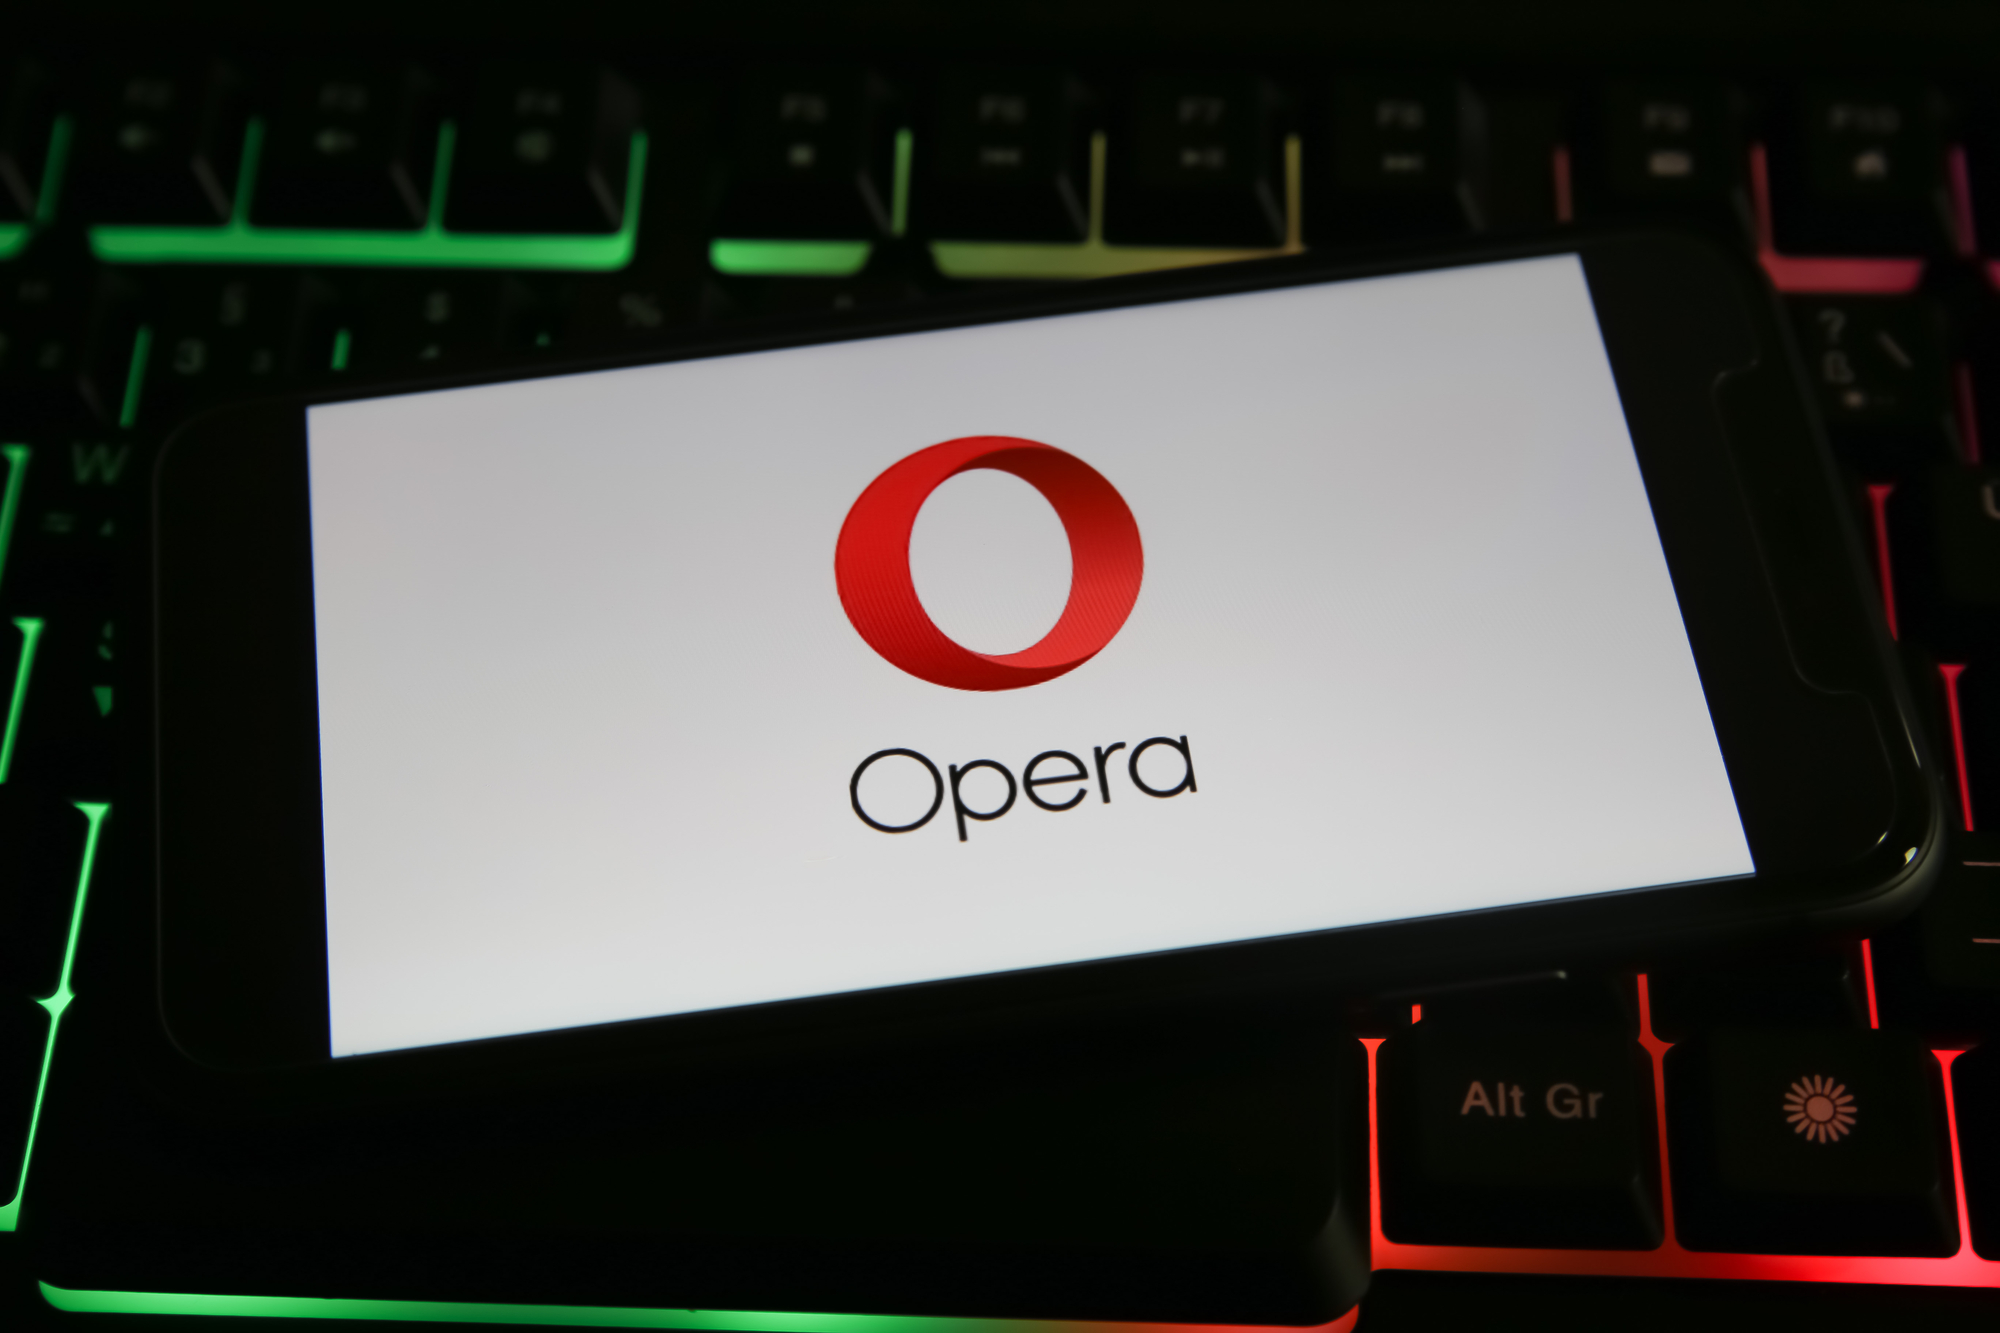 Le navigateur Opera se met à l'heure de l'IA avec ChatGPT et ChatSonic